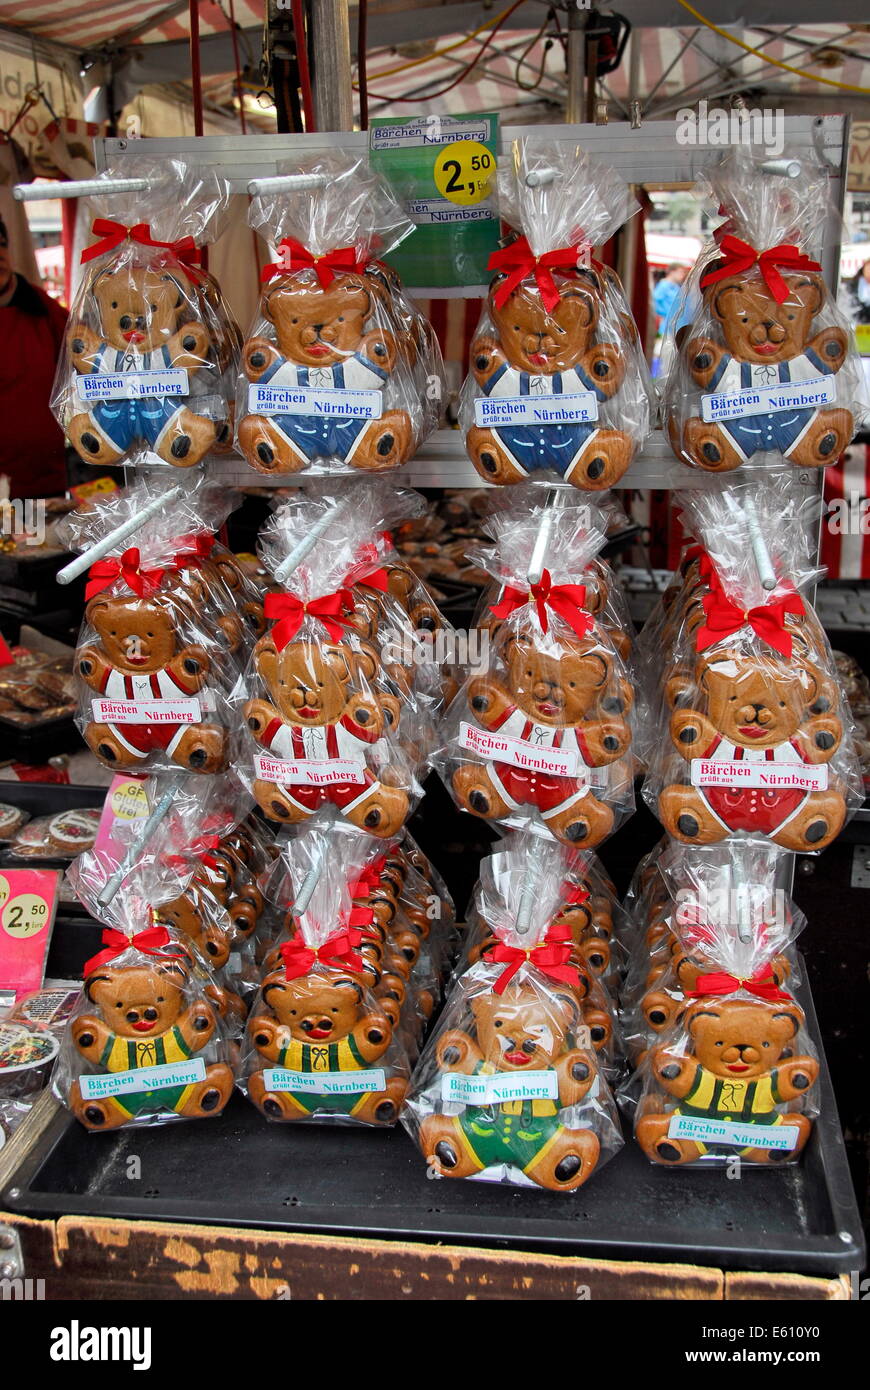 Luogo di mercato la vendita di biscotti di panpepato di Norimberga, Germania Foto Stock